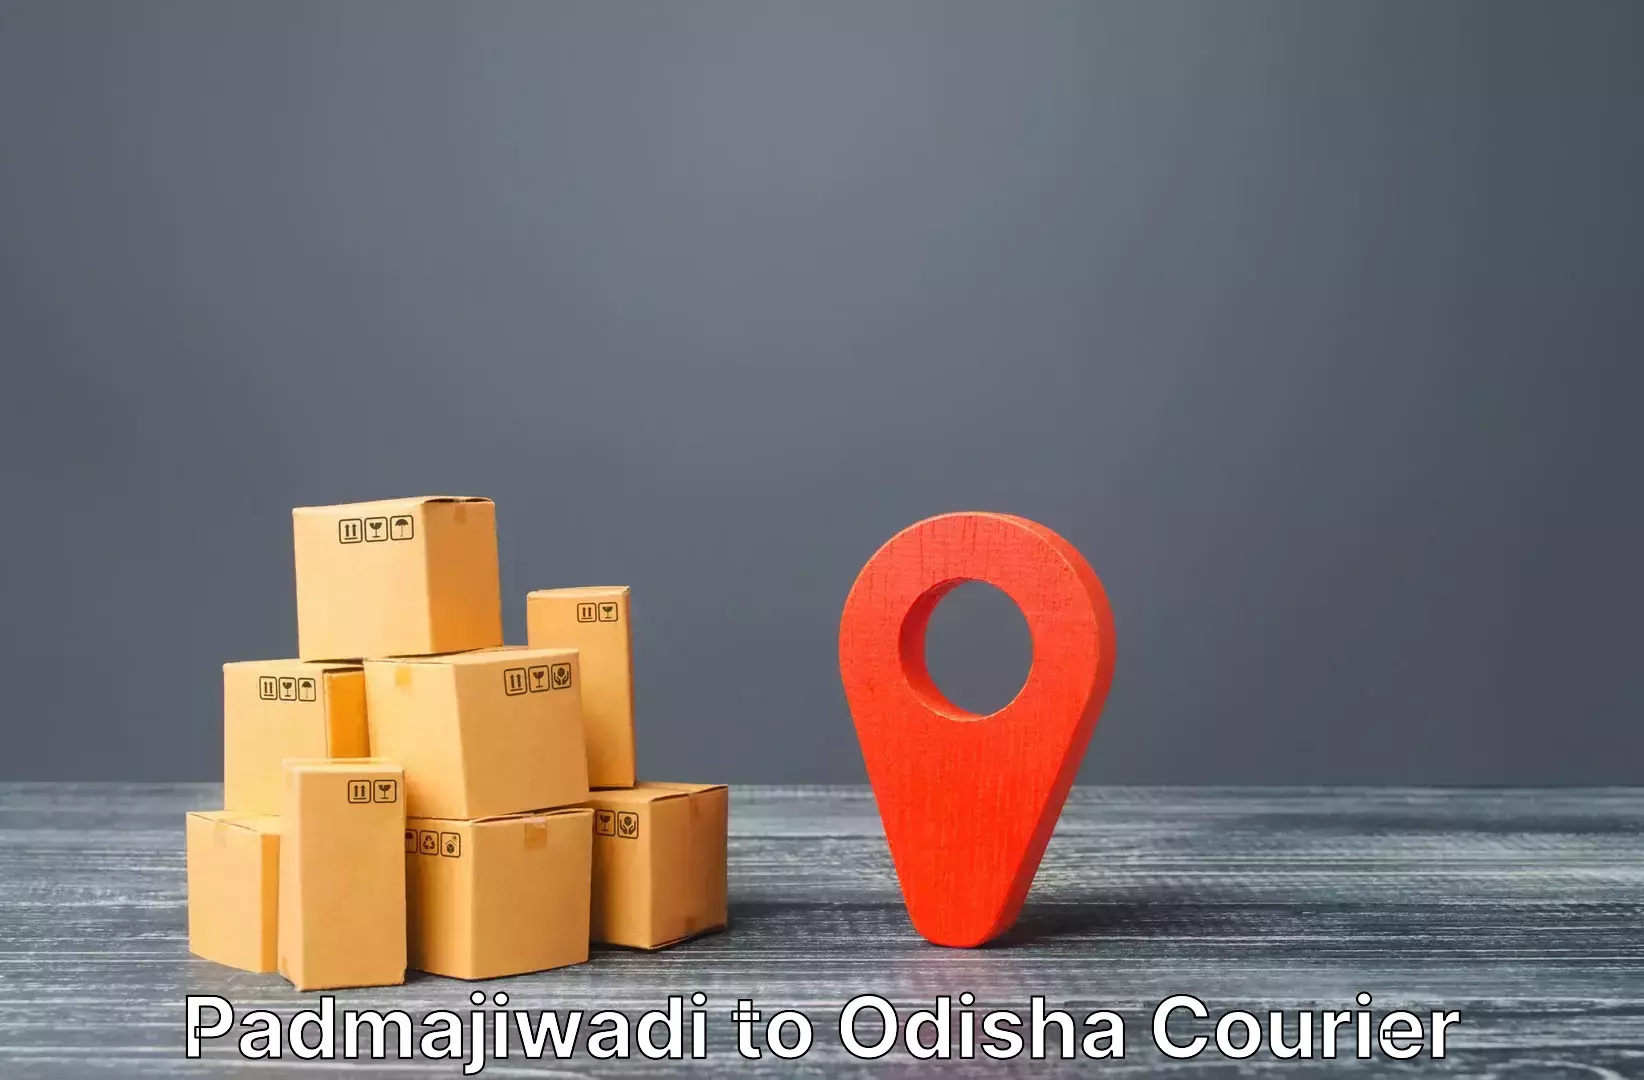 Luggage shipment logistics in Padmajiwadi to Baripada